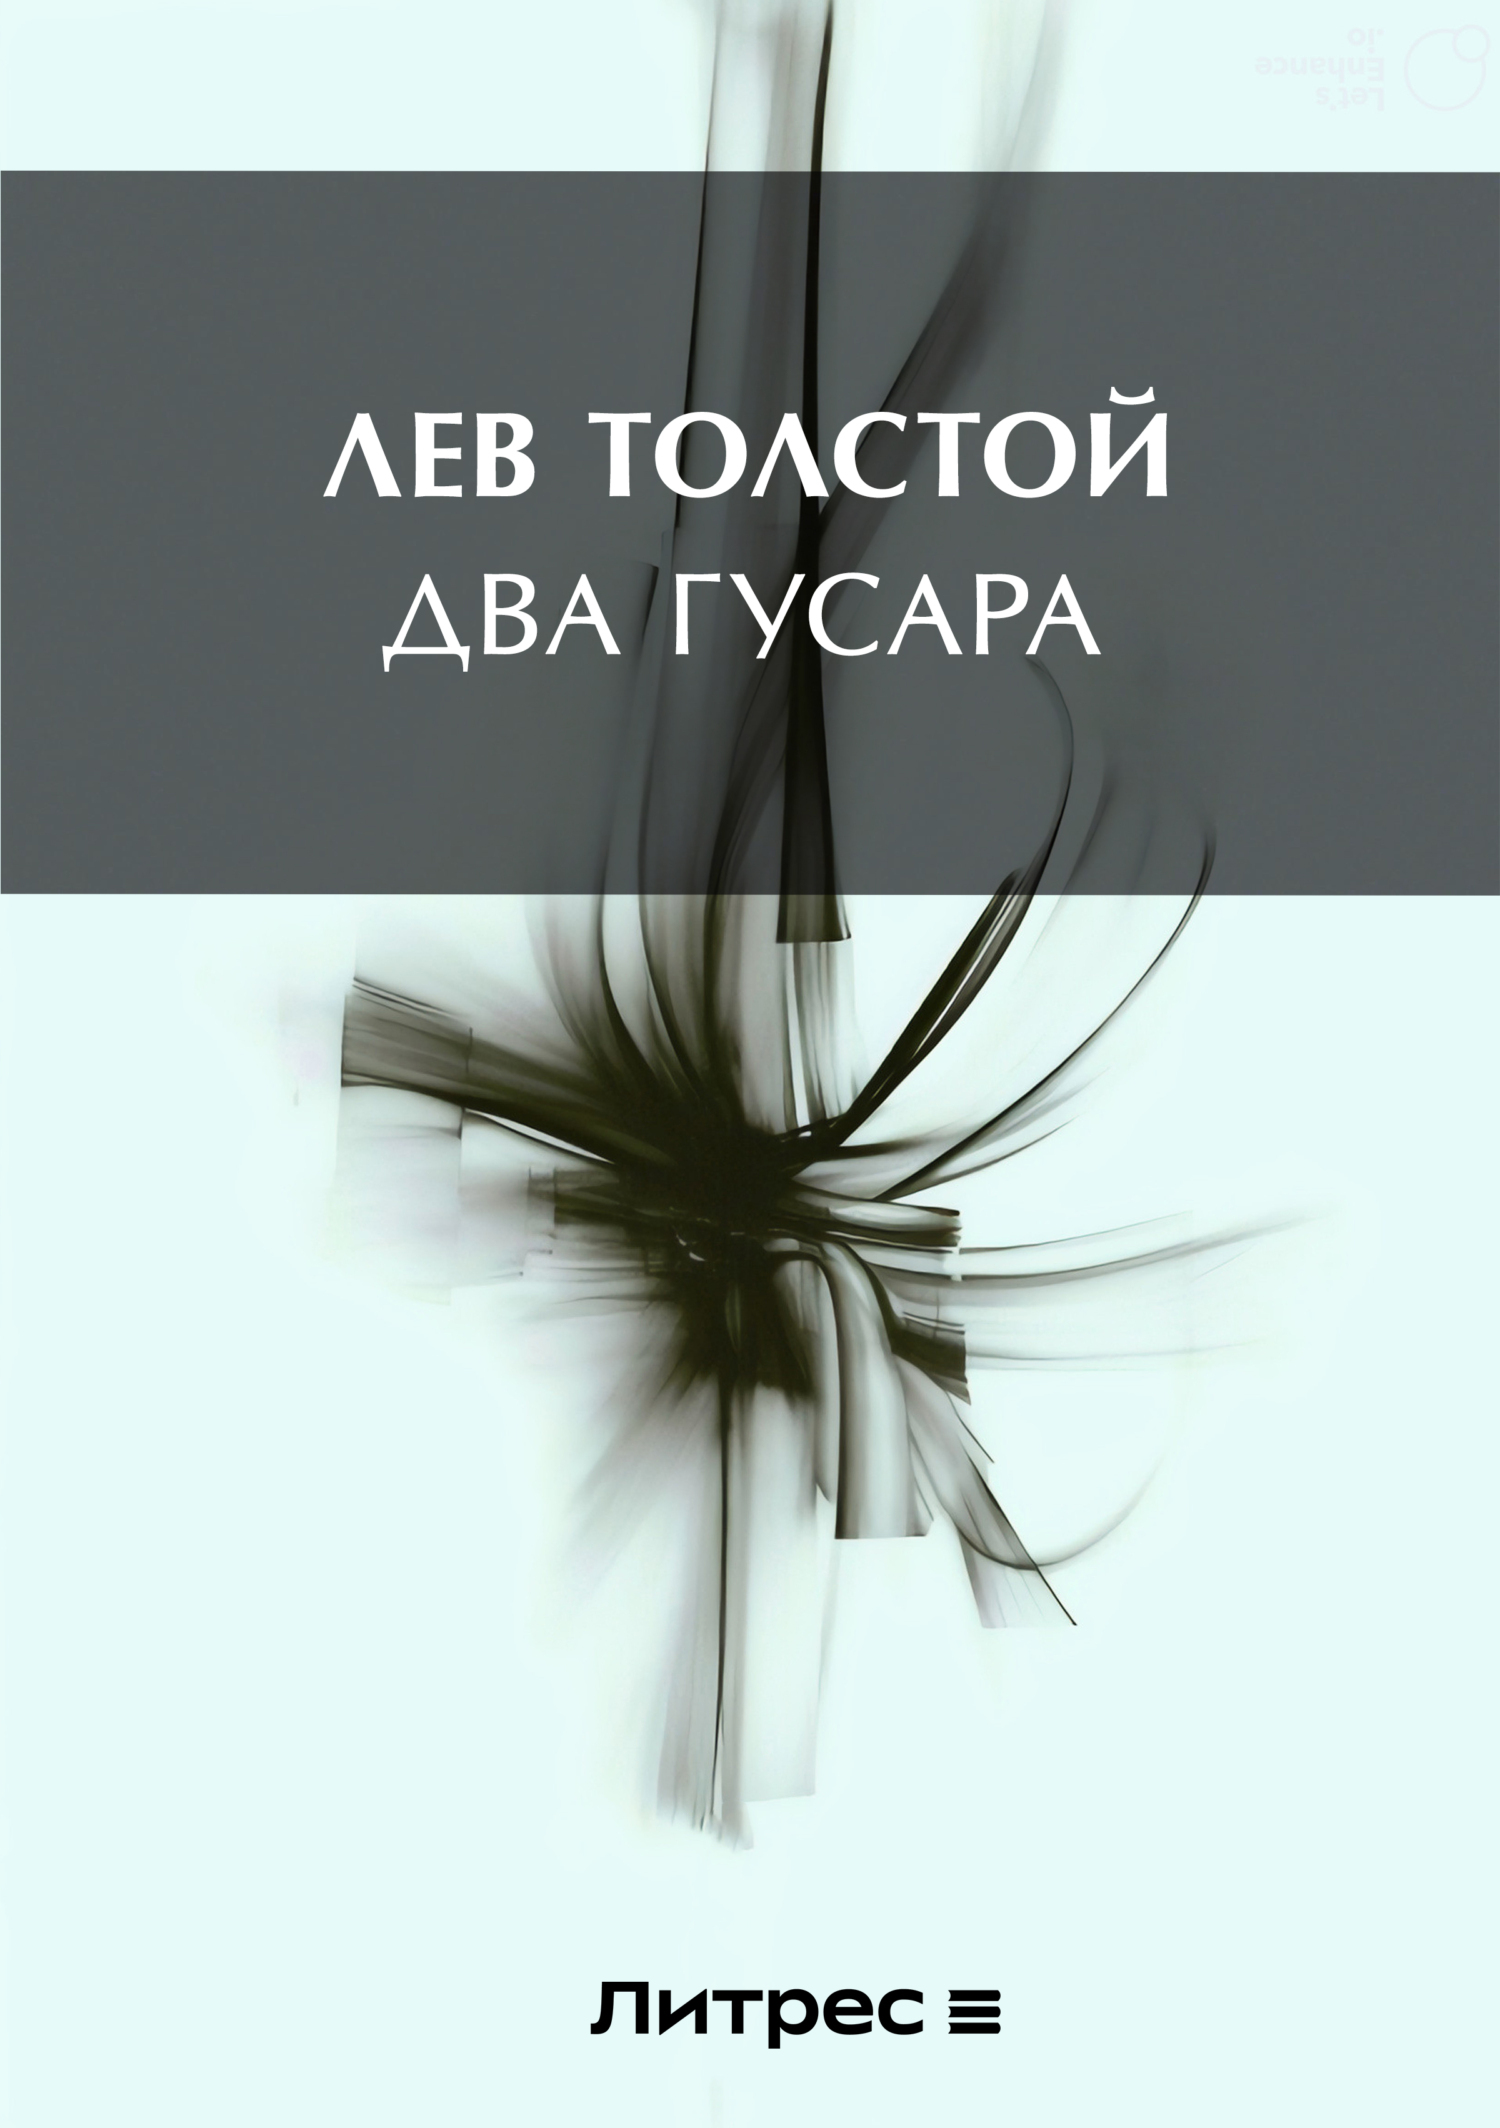 Толстой, Алексей Николаевич — Википедия